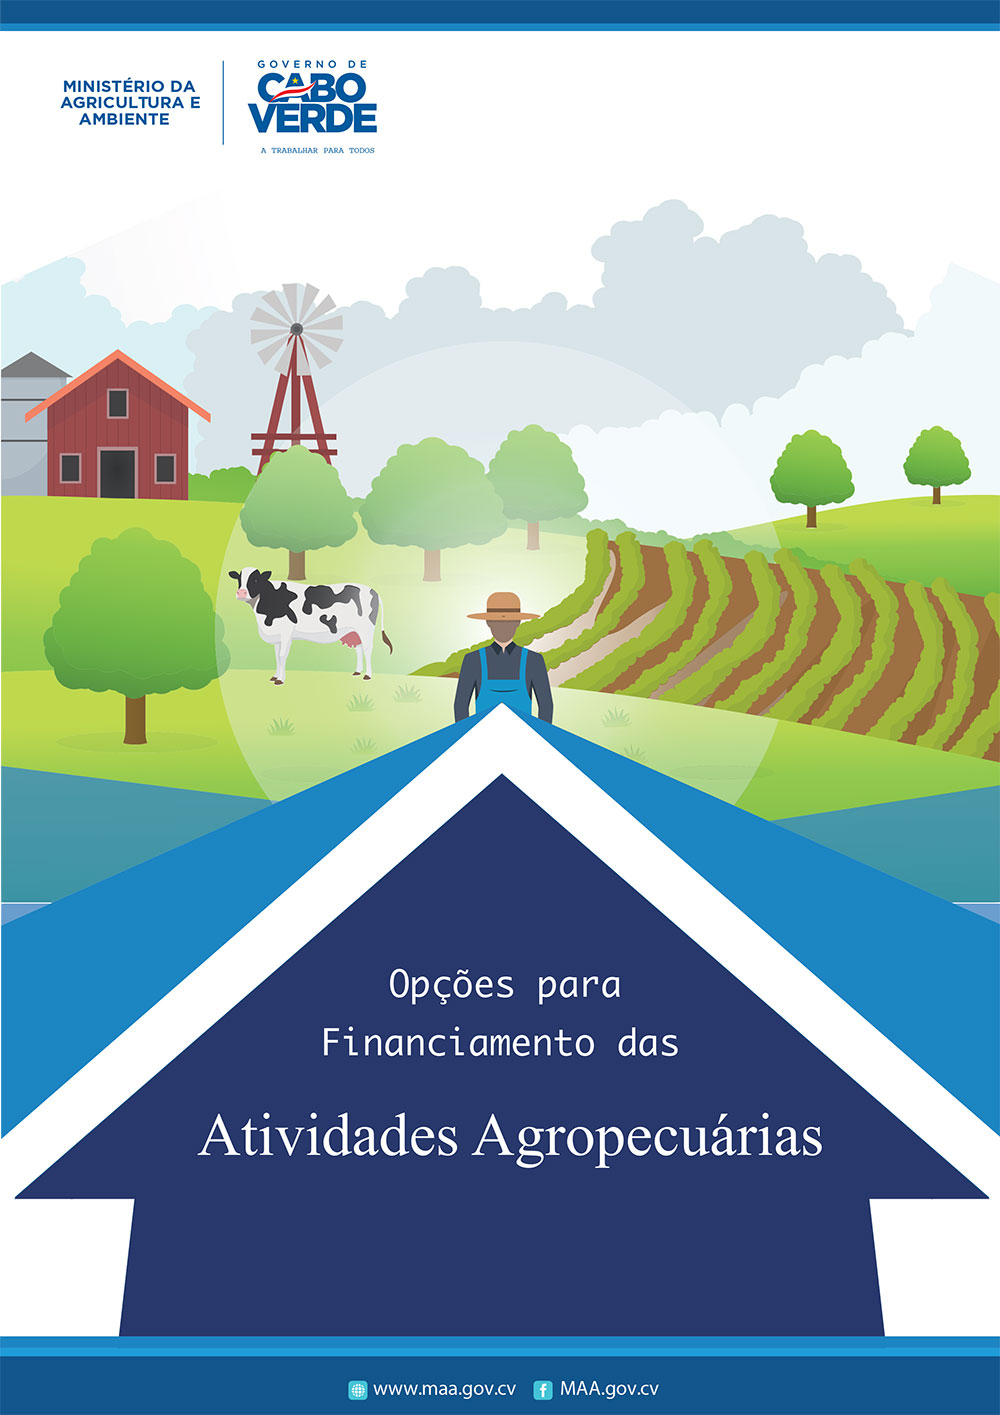 Opções para Financiamento das Atividades Agropecuárias